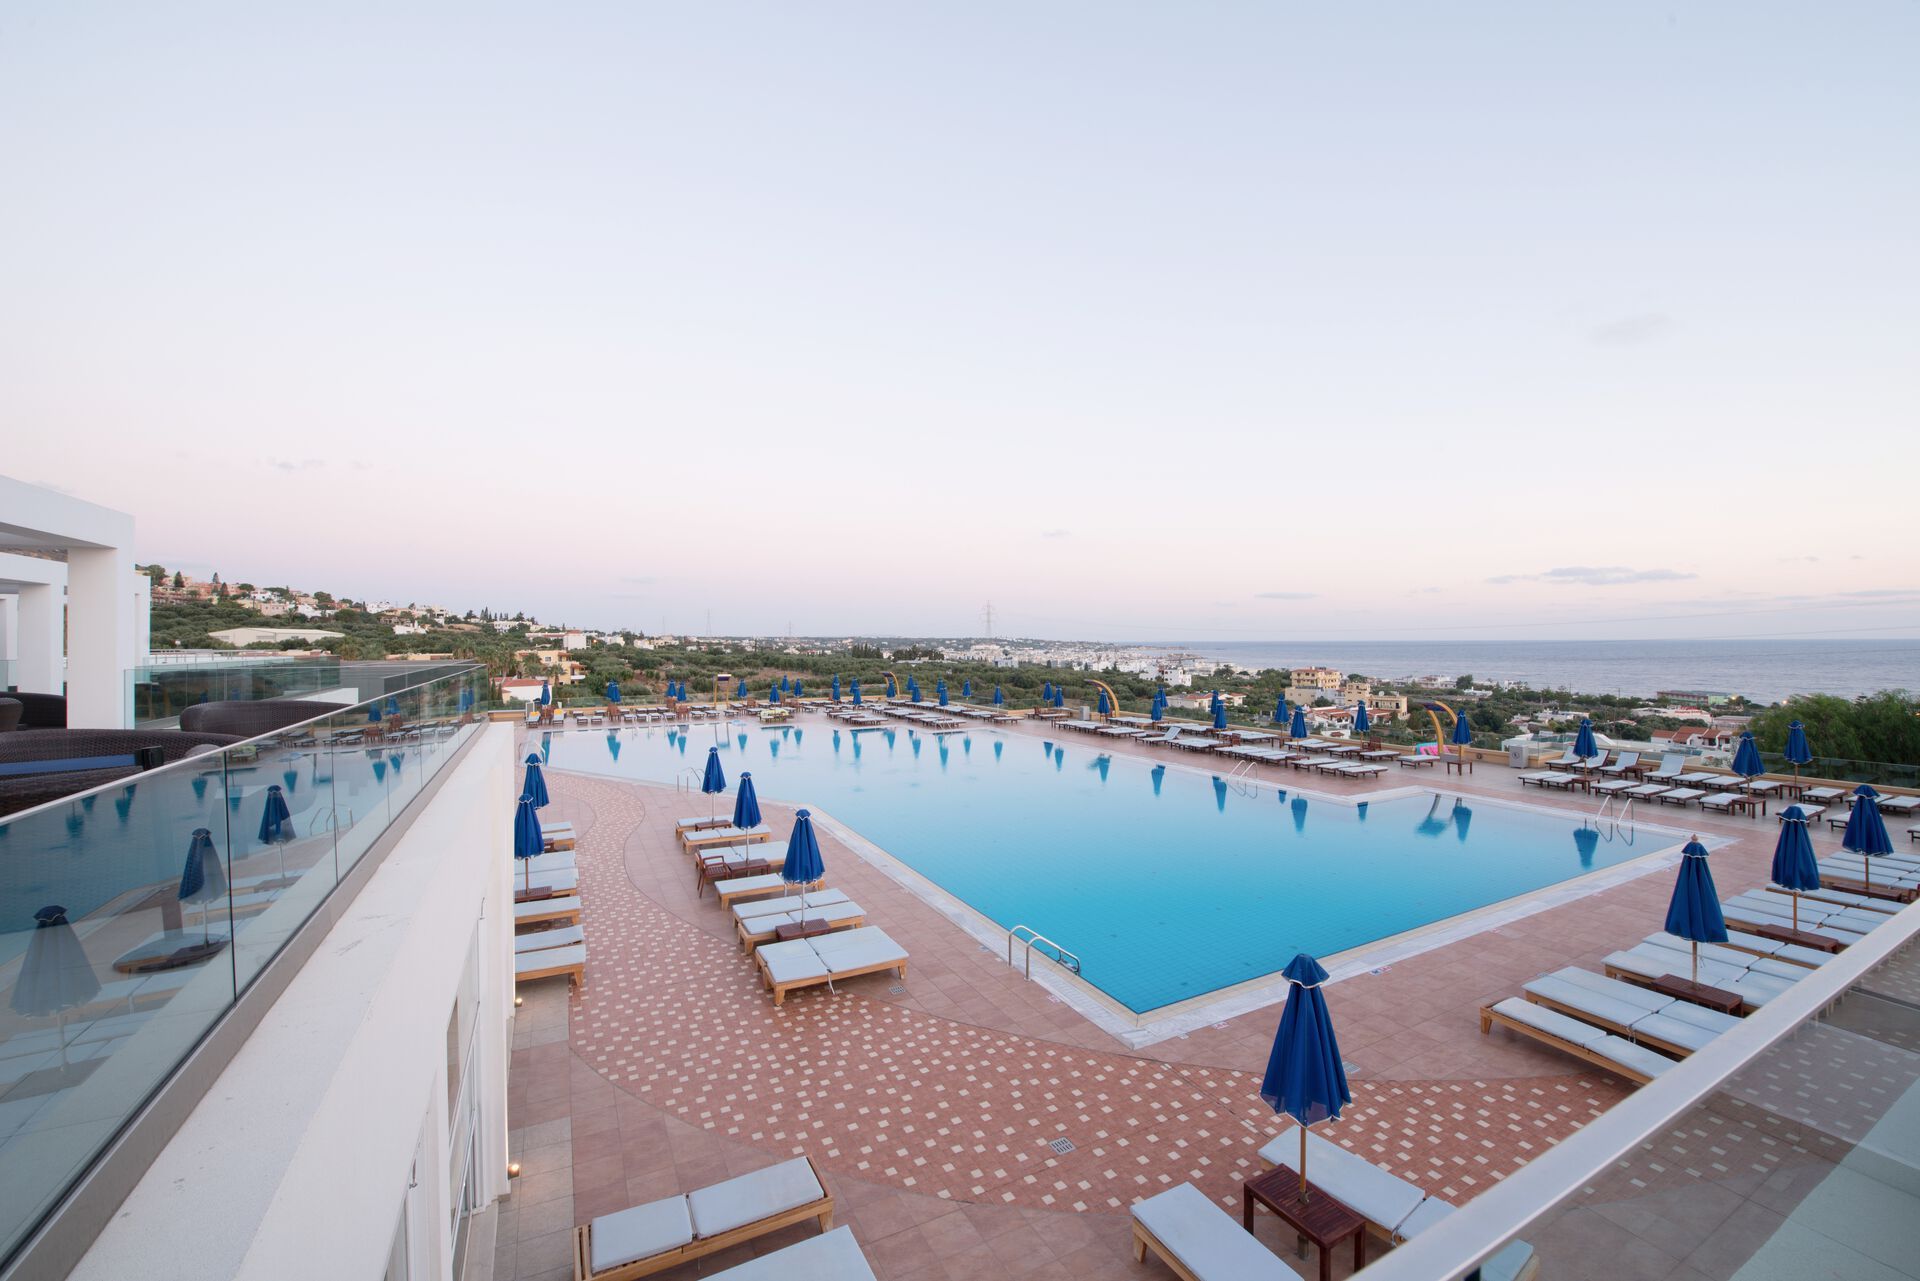 Crète - Hersonissos - Grèce - Iles grecques - Royal & Imperial Belvedere Hotels 4*